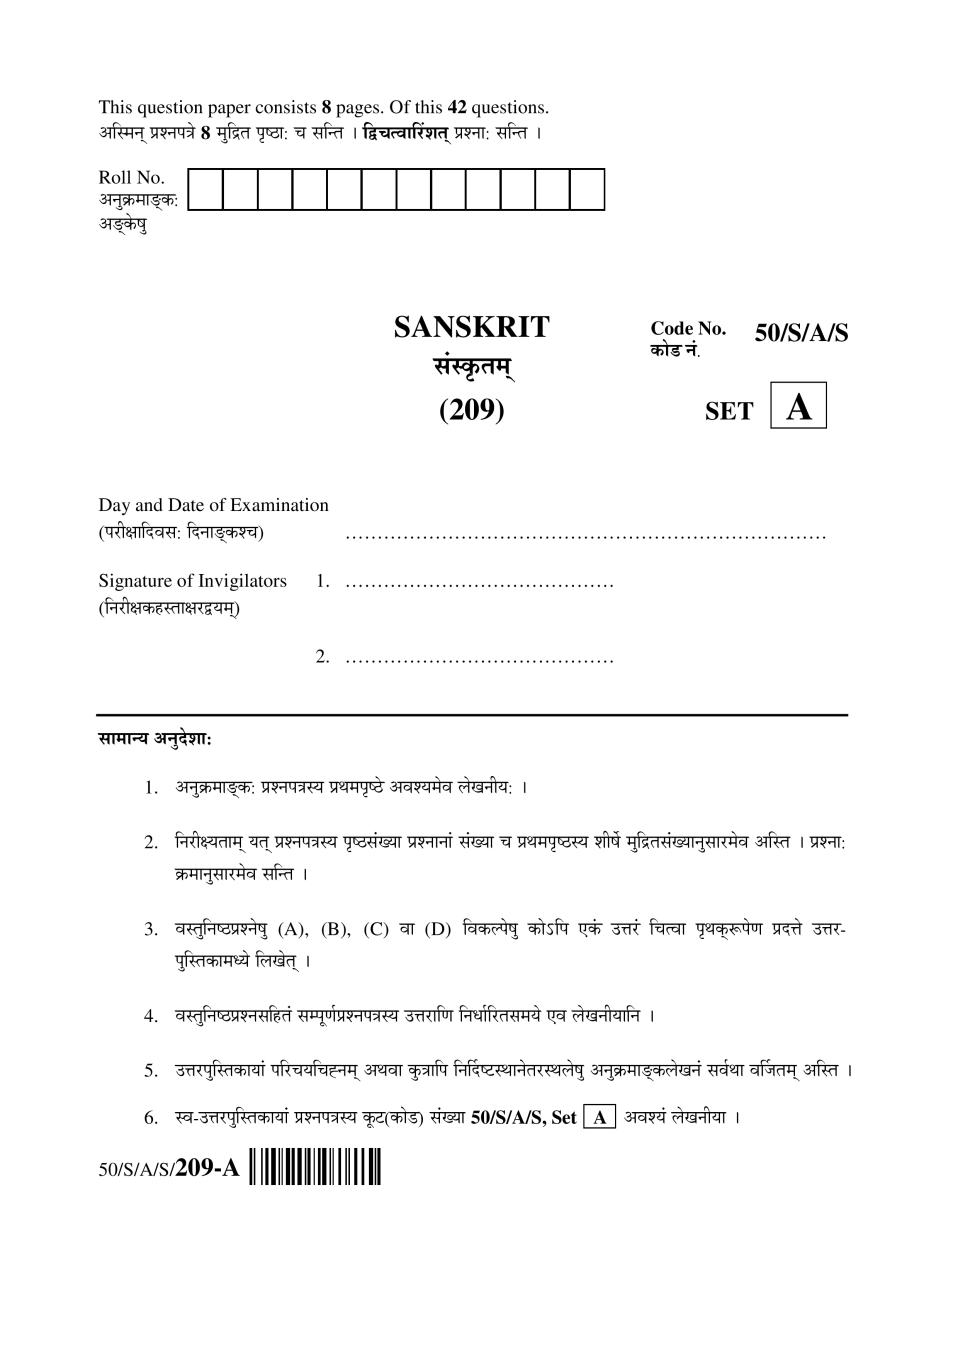 NIOS Class 10 Question Paper Apr 2015 - Sanskrit - Page 1